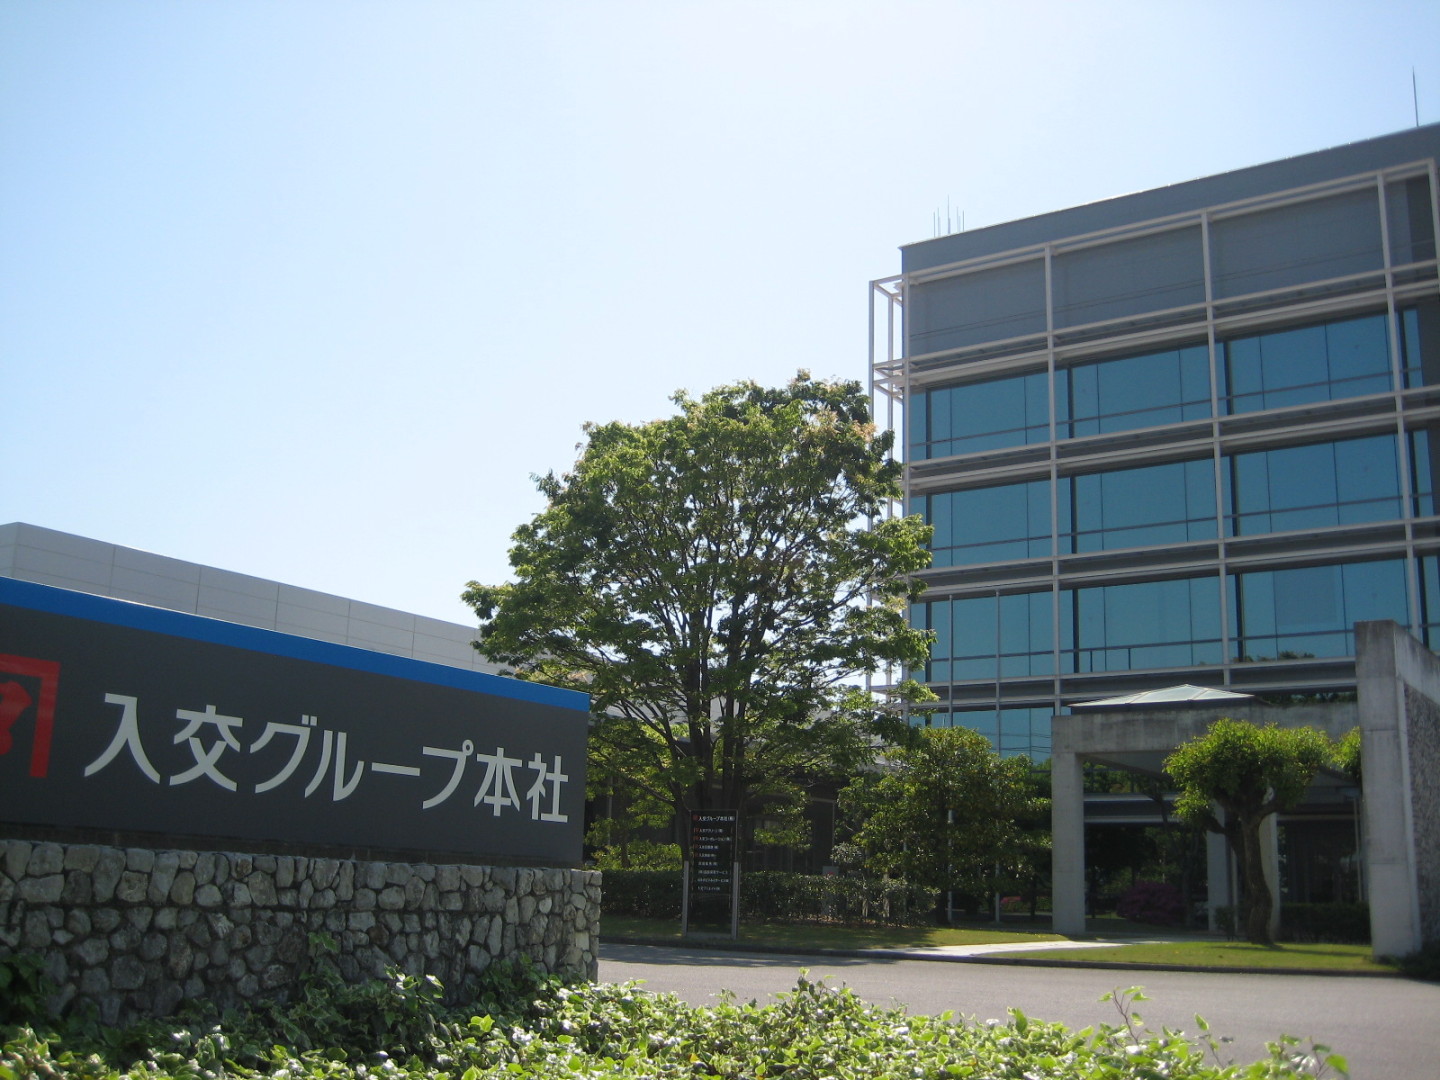 入交グループ本社は、高知県を中心に30数社の関連会社を持ち創業から200年以上の歴史を持つ「入交グループ」の持株会社です。